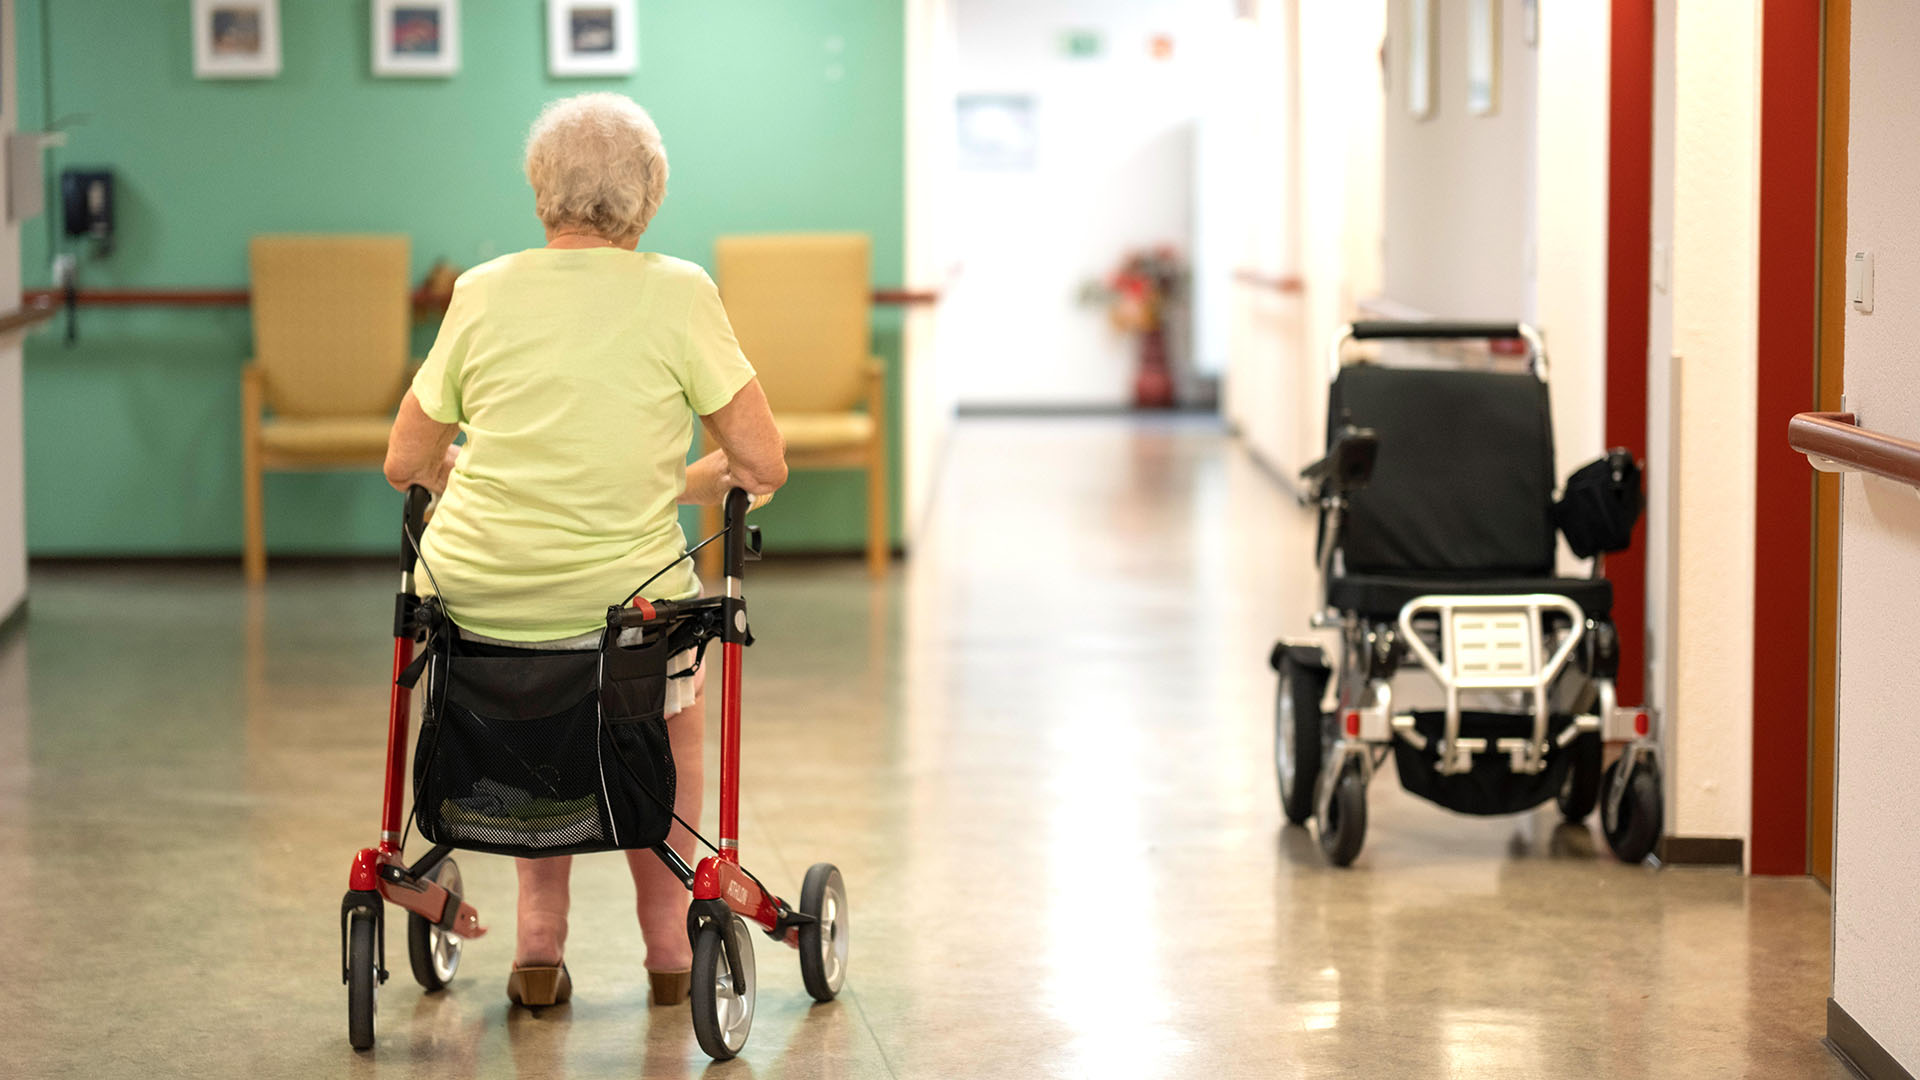 Symbolbild: Eine Bewohnerin im Rollstuhl auf dem Flur im Altenpflegeheim. (Quelle: dpa/Wegner)